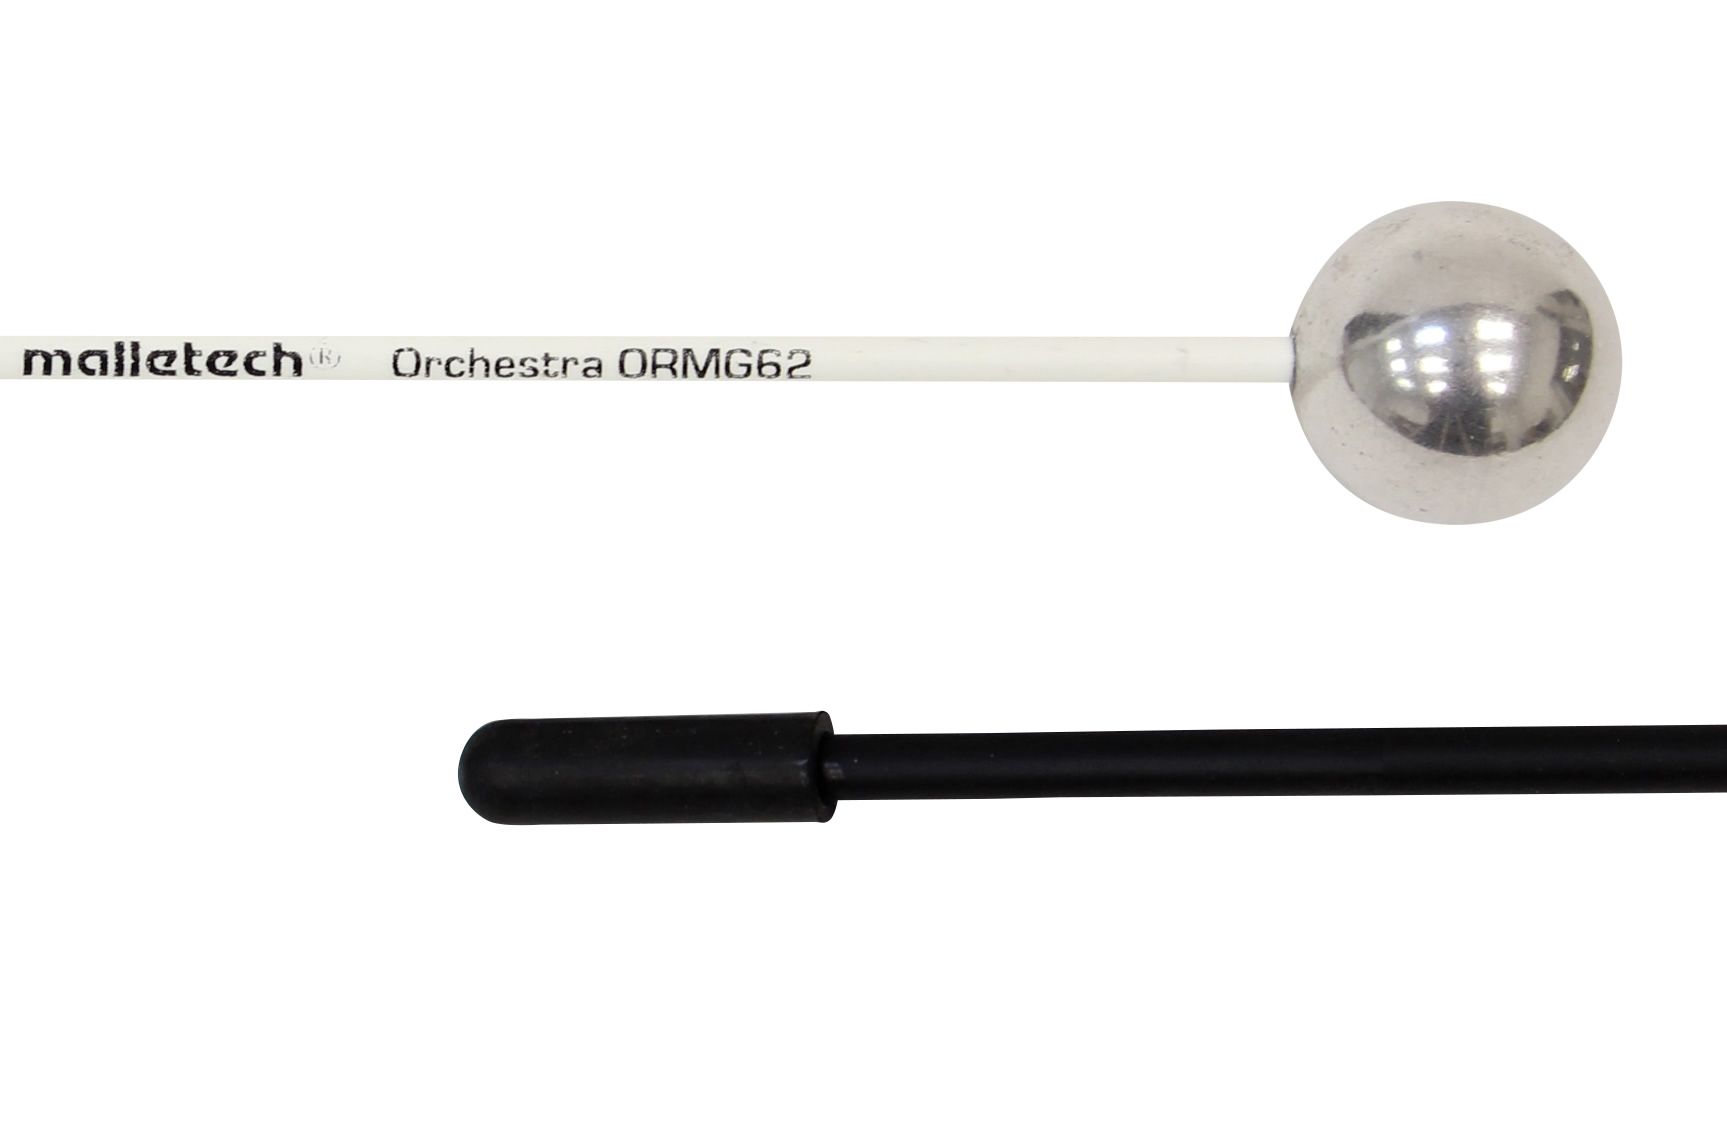 ORMG62 アルミニウムボール／オーケストラ シリーズ グロッケンマレット